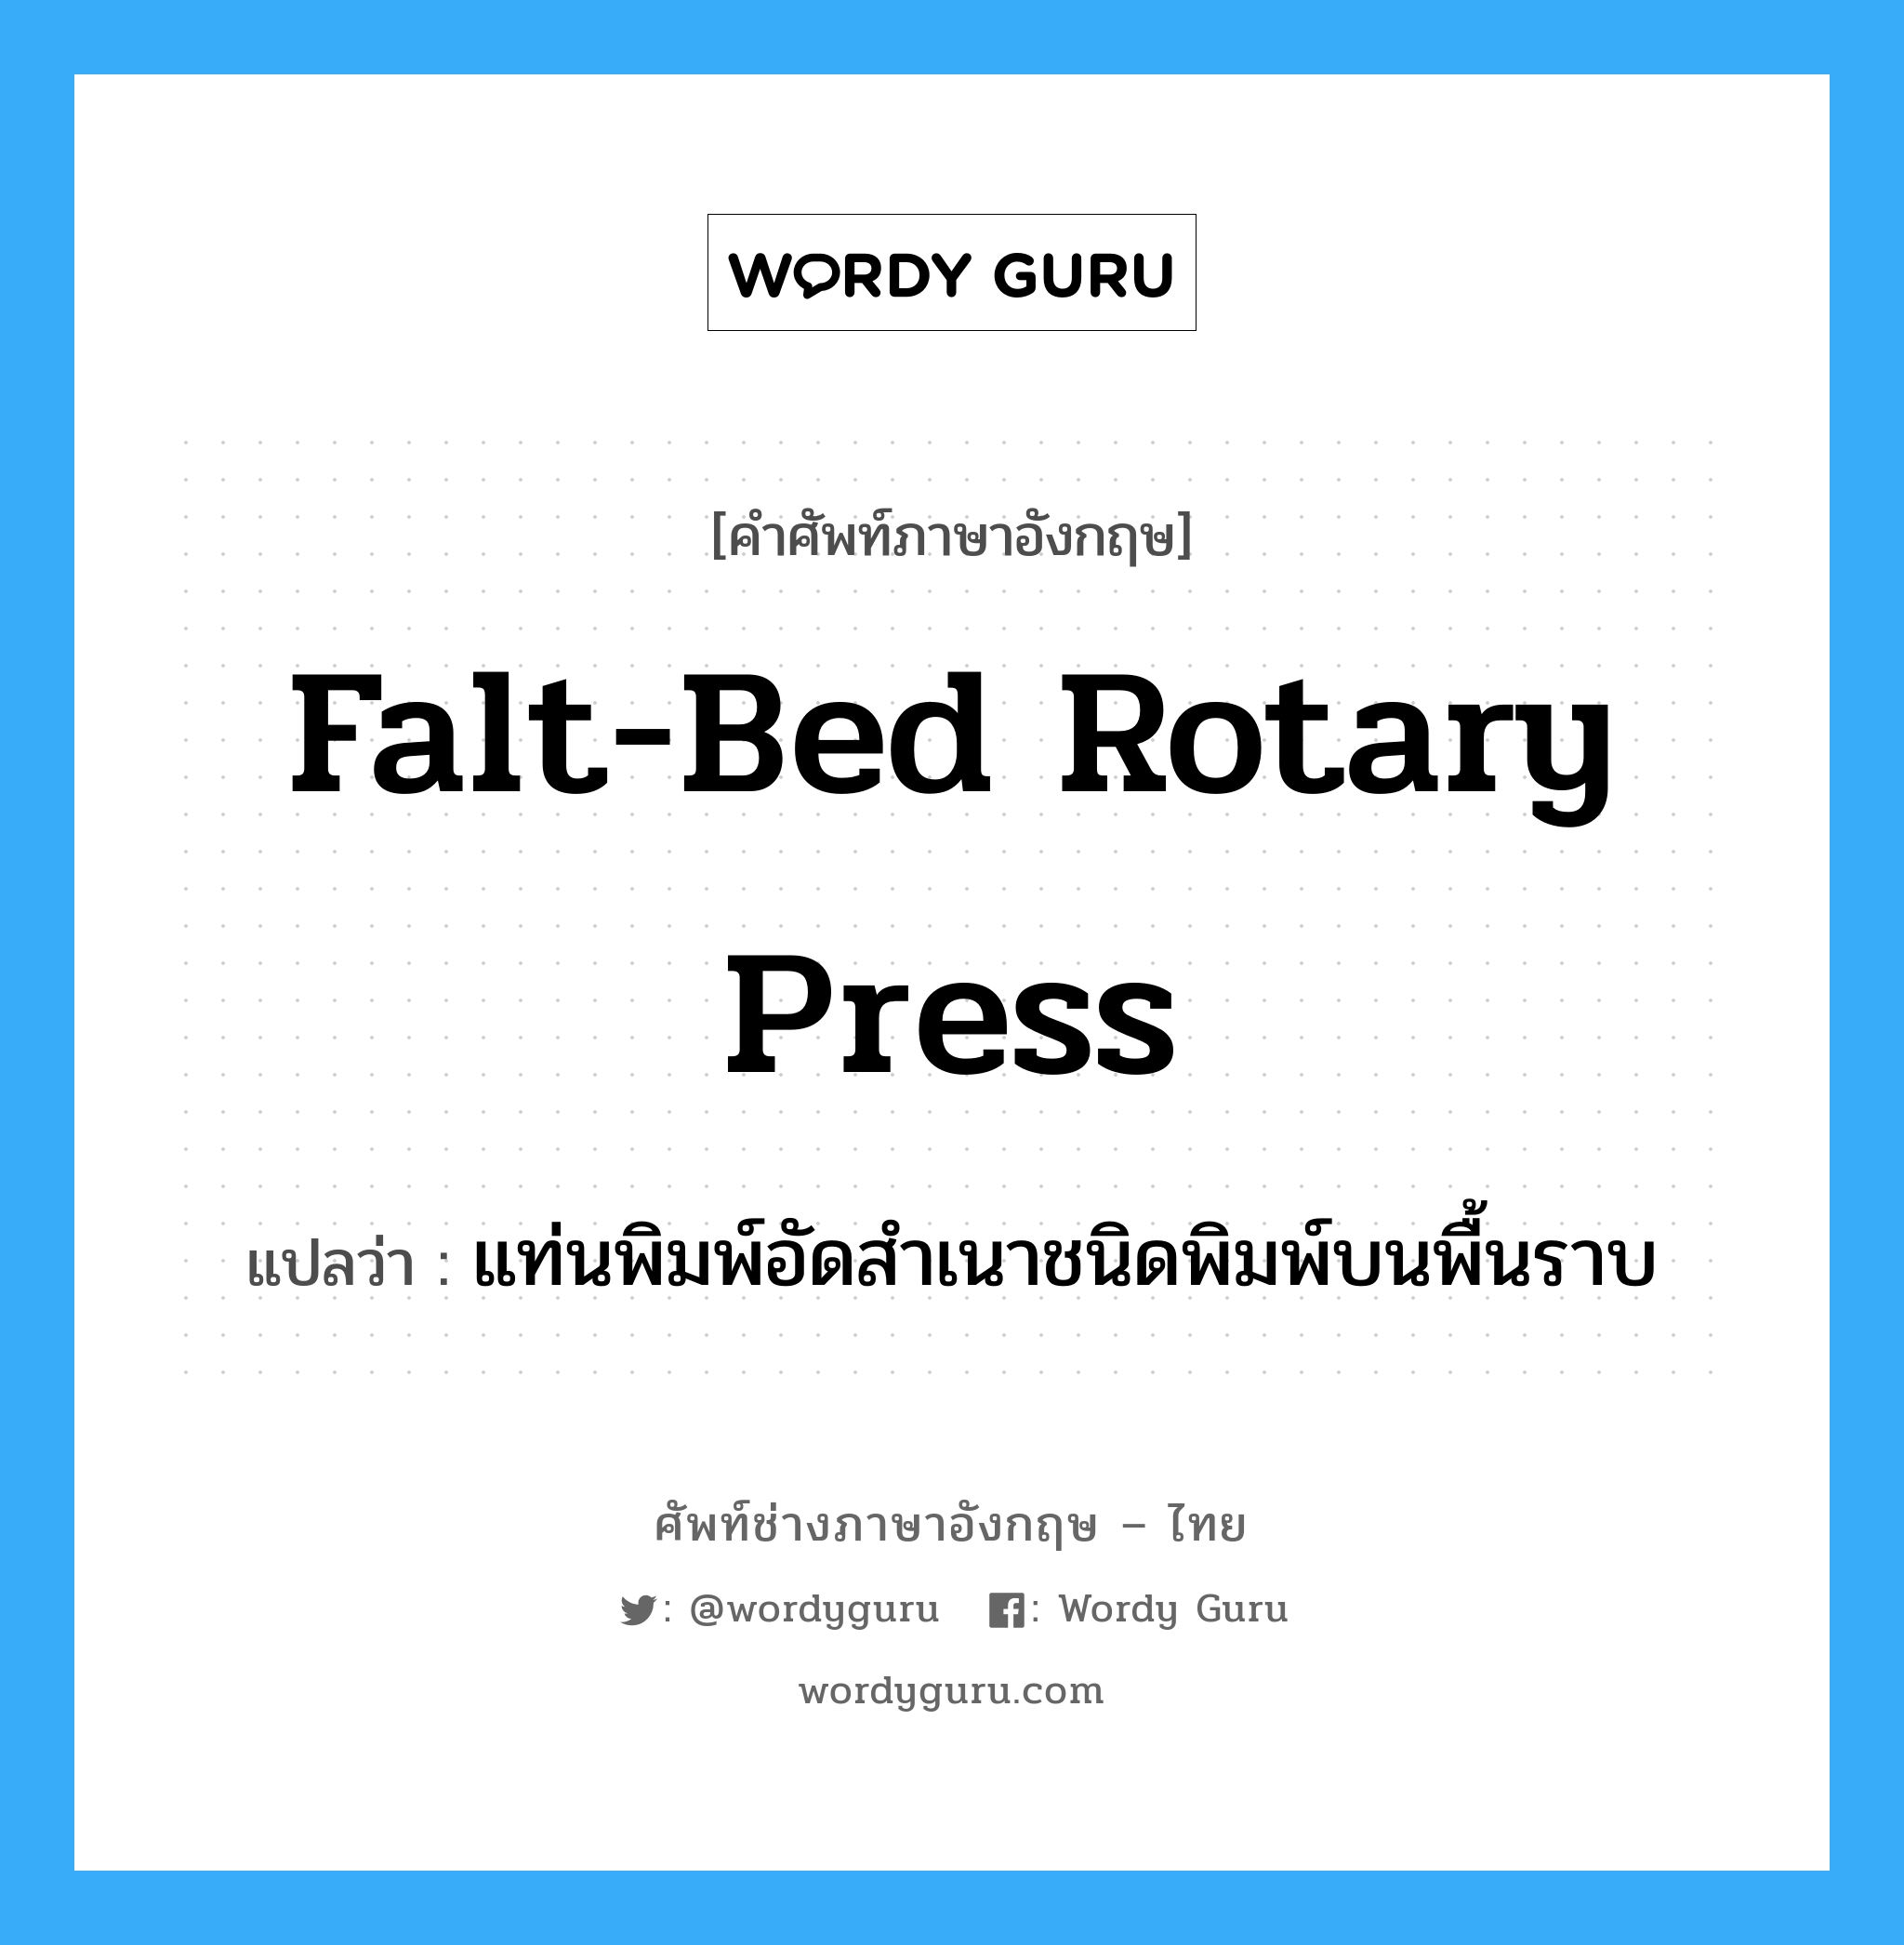 falt-bed rotary press แปลว่า?, คำศัพท์ช่างภาษาอังกฤษ - ไทย falt-bed rotary press คำศัพท์ภาษาอังกฤษ falt-bed rotary press แปลว่า แท่นพิมพ์อัดสำเนาชนิดพิมพ์บนพื้นราบ